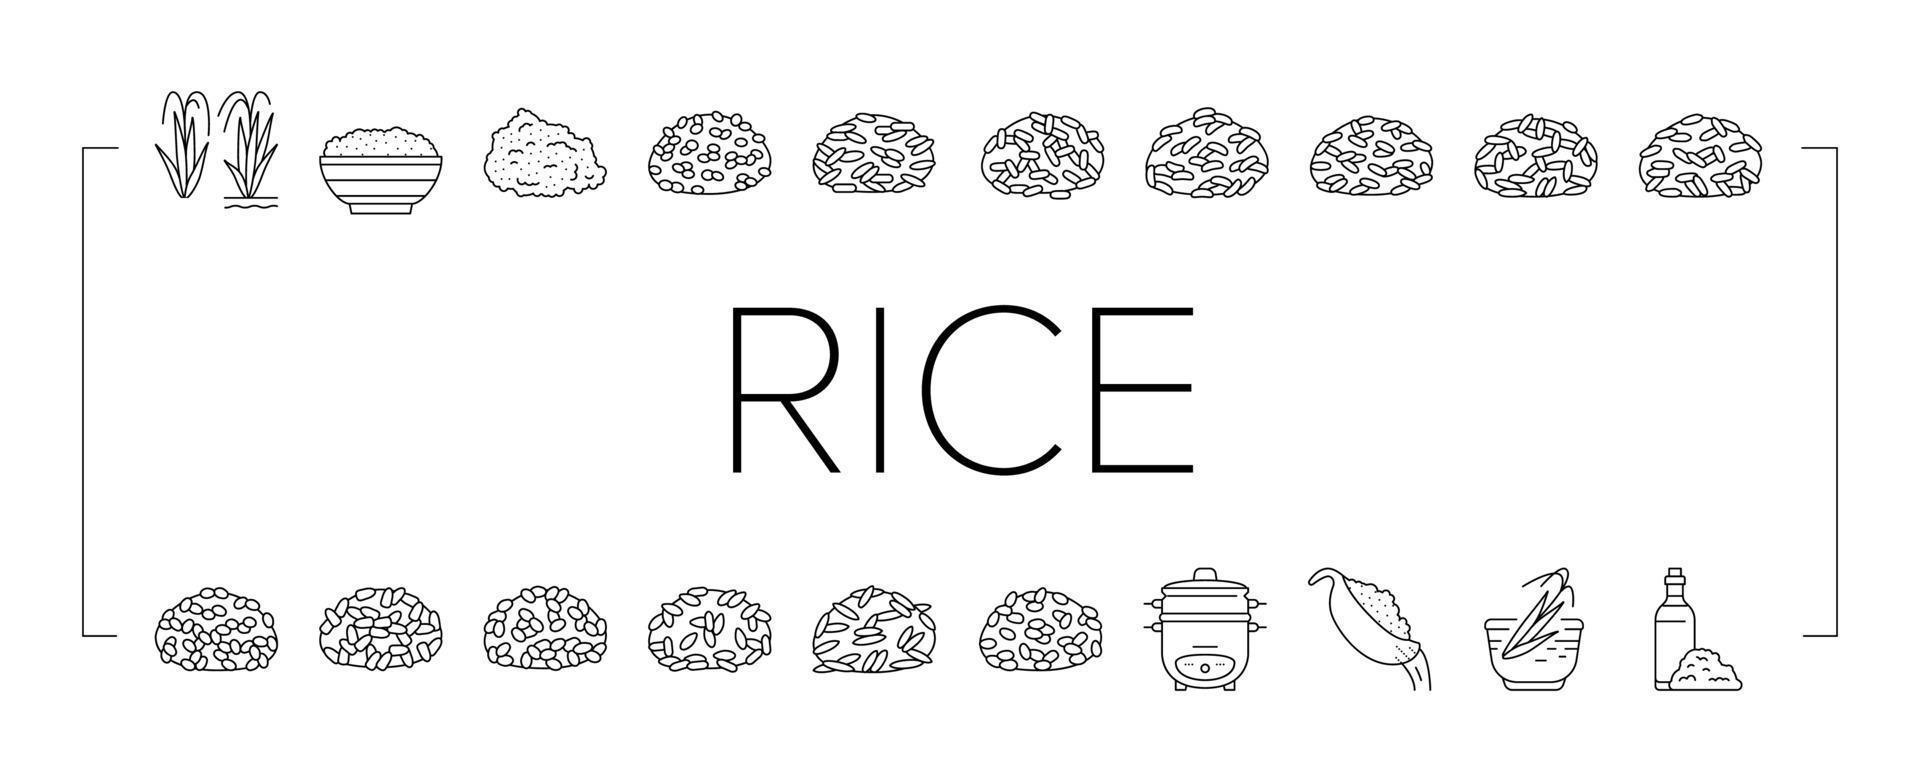 arroz para preparar o conjunto de ícones de comida deliciosa vetor